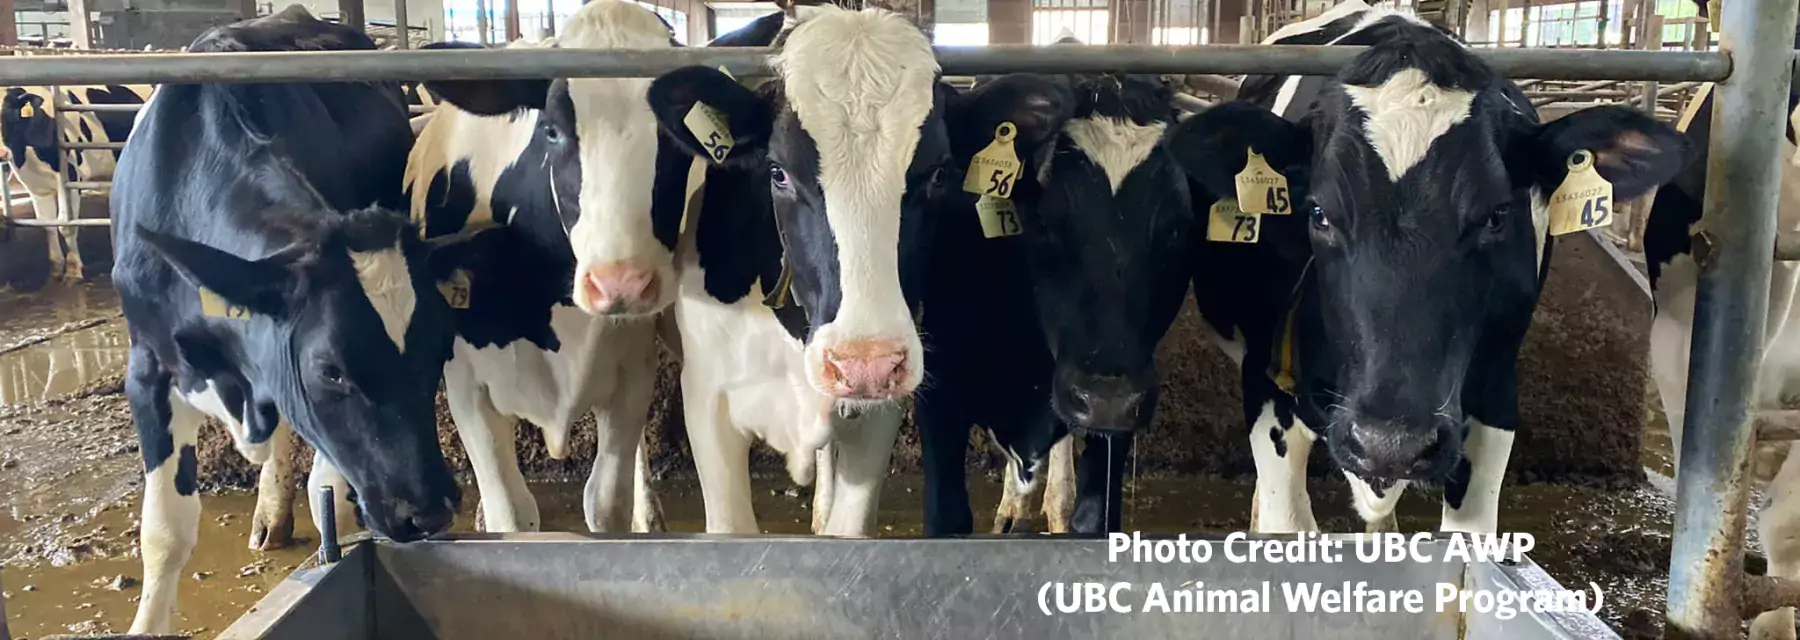 UBC Animal Welfare Program